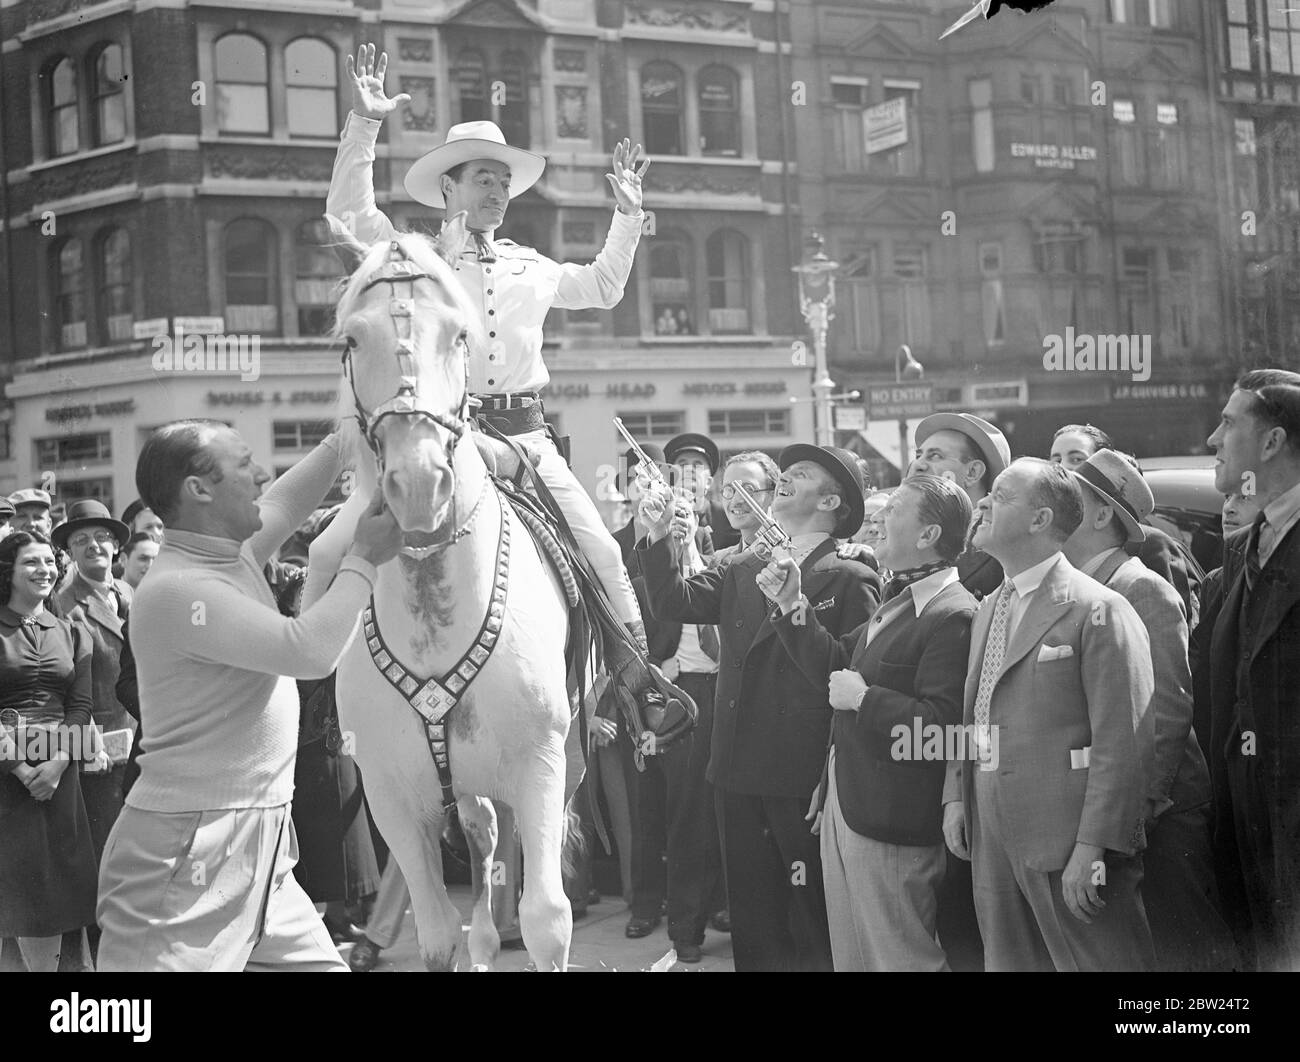 Tom Mix, attraversa il West End su Tony. Tom Mix, l'attore del film dei cowboy, ha creato una diversione nel West End occupato cavalcando il suo cavallo Tony il secondo attraverso il traffico. Spettacoli fotografici, Tom Mix tenuto dal Palladium 'Crazy Gang ' in Marlborough Street. 3 settembre 1938 Foto Stock